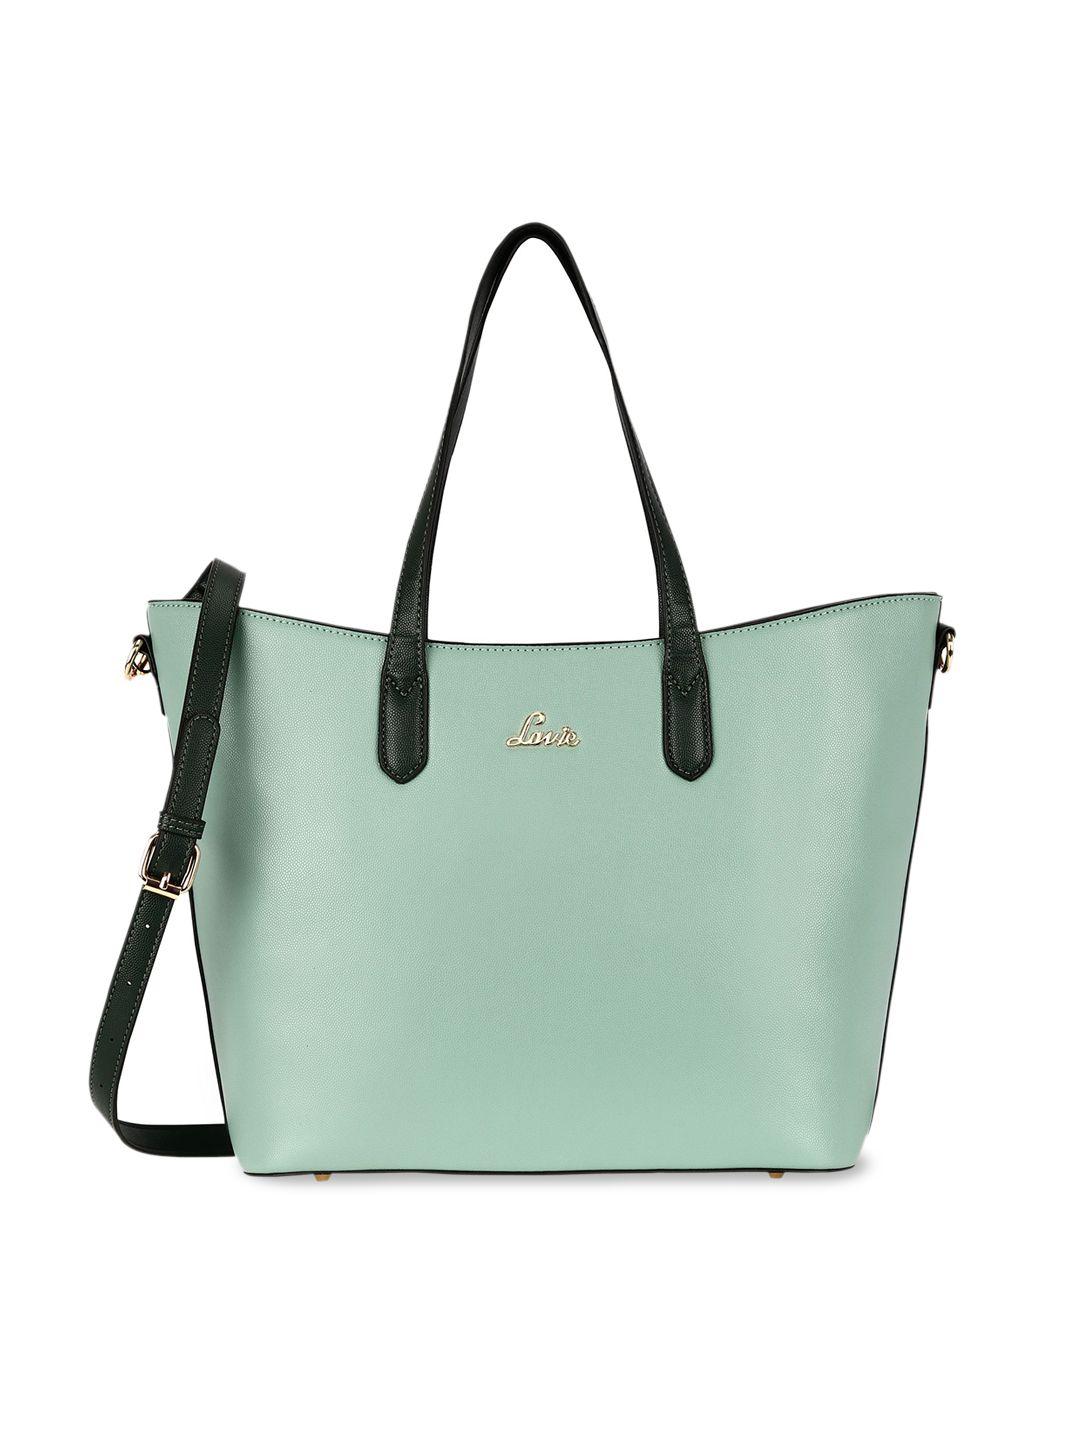 lavie sea green colourblocked structured satchel